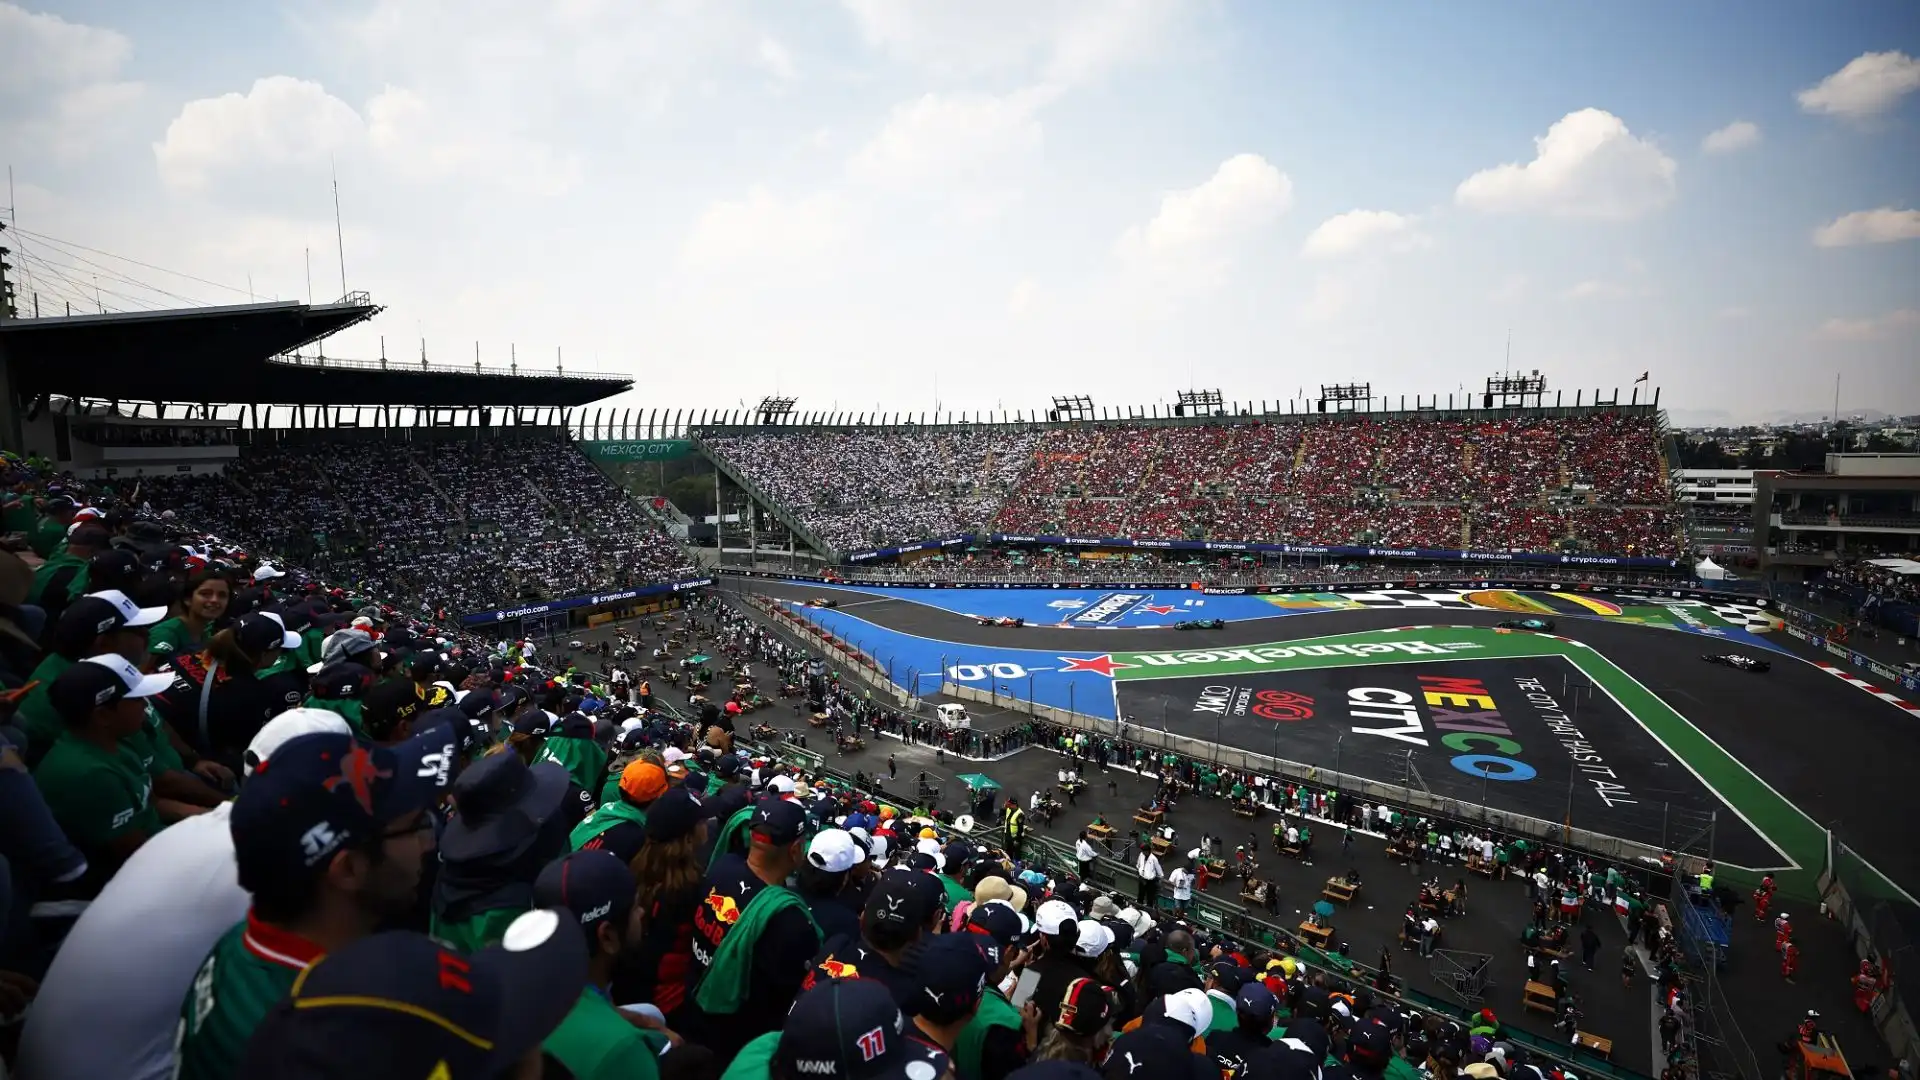 Tanti tifosi messicani accusano la Red Bull di favorire Verstappen rispetto a Sergio Perez